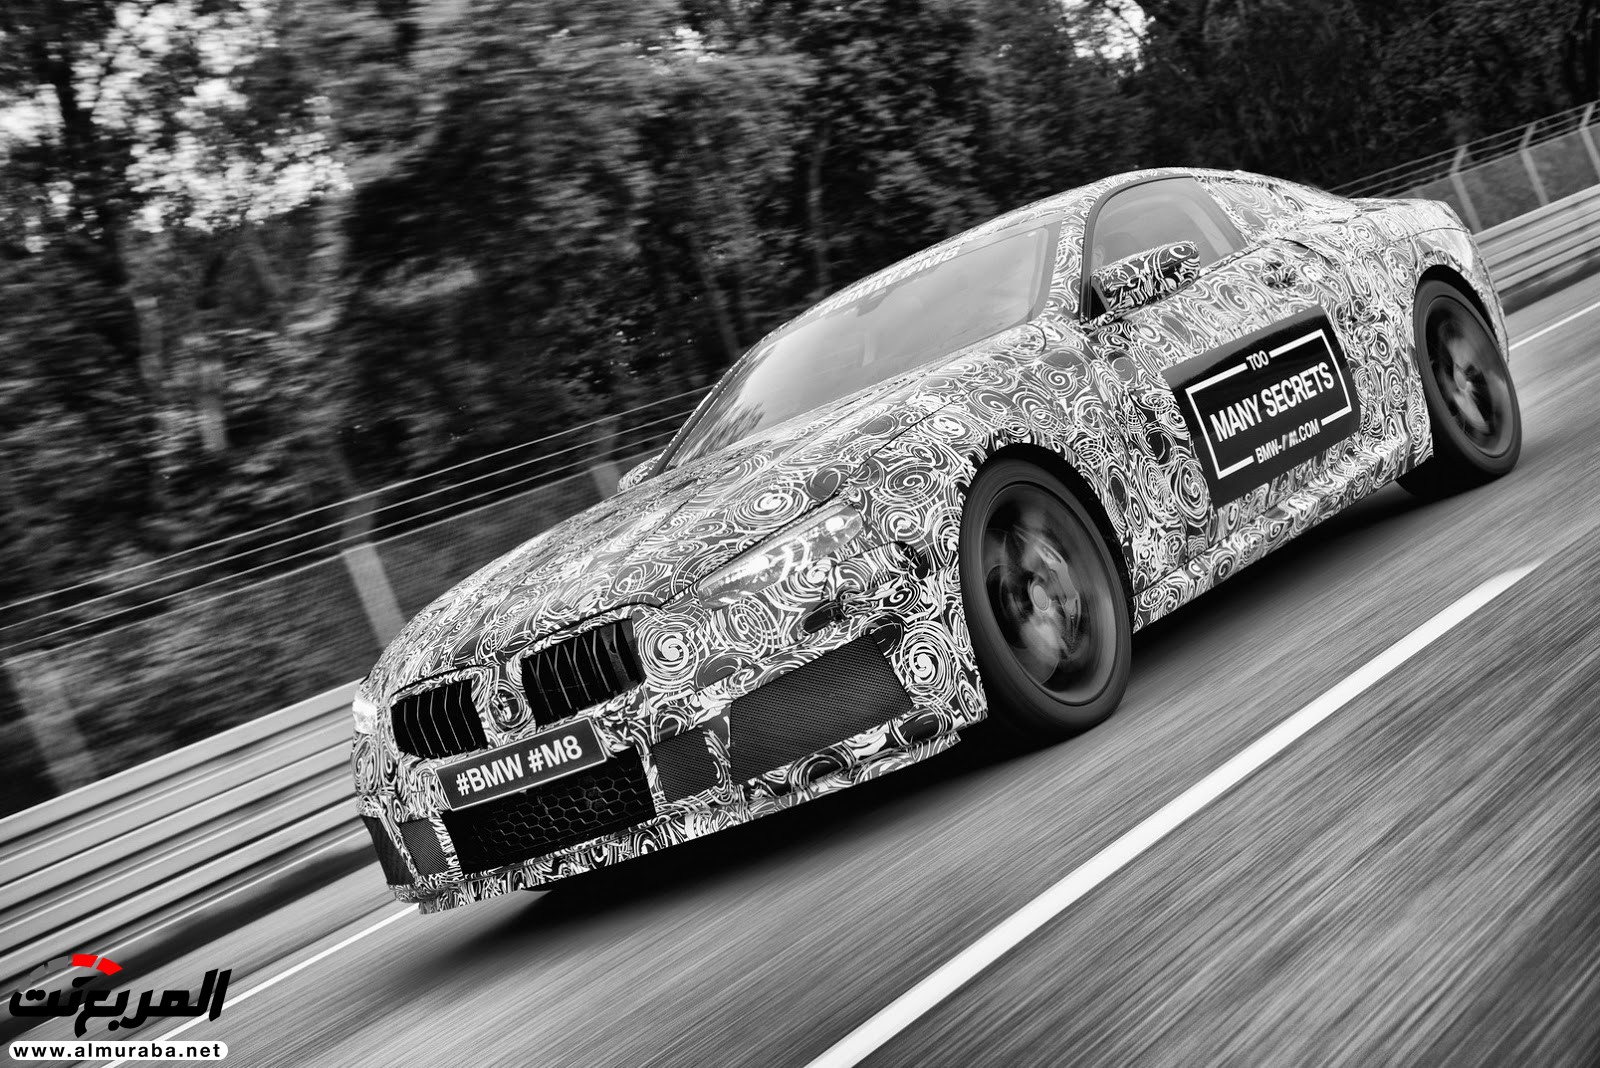 بي إم دبليو M8 يكشف عن نموذجها - وسيارة سباق الفئة الثامنة في الطريق 17